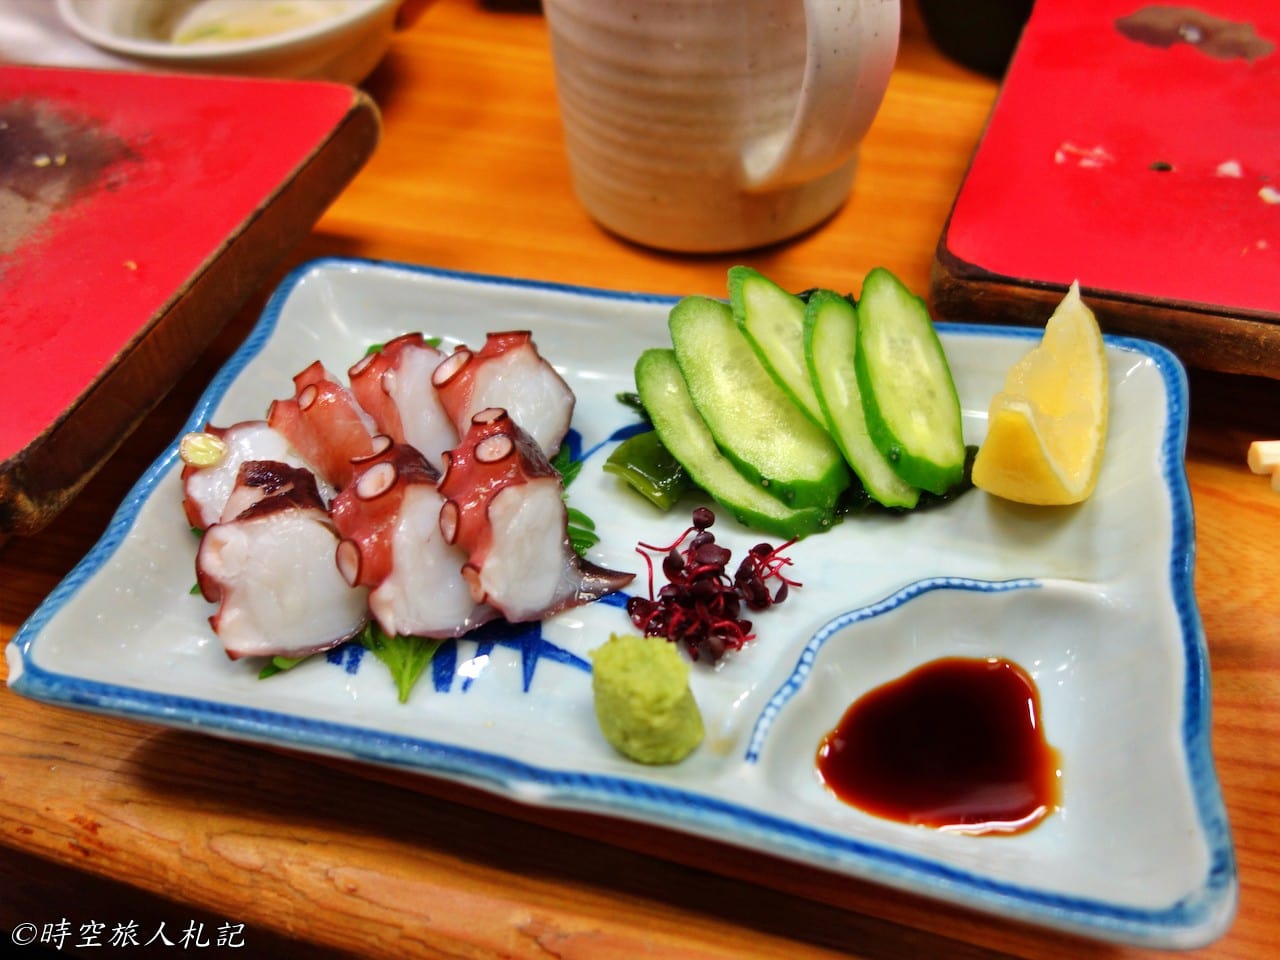 神戶美食,kobe-food,日本神戶美食 35